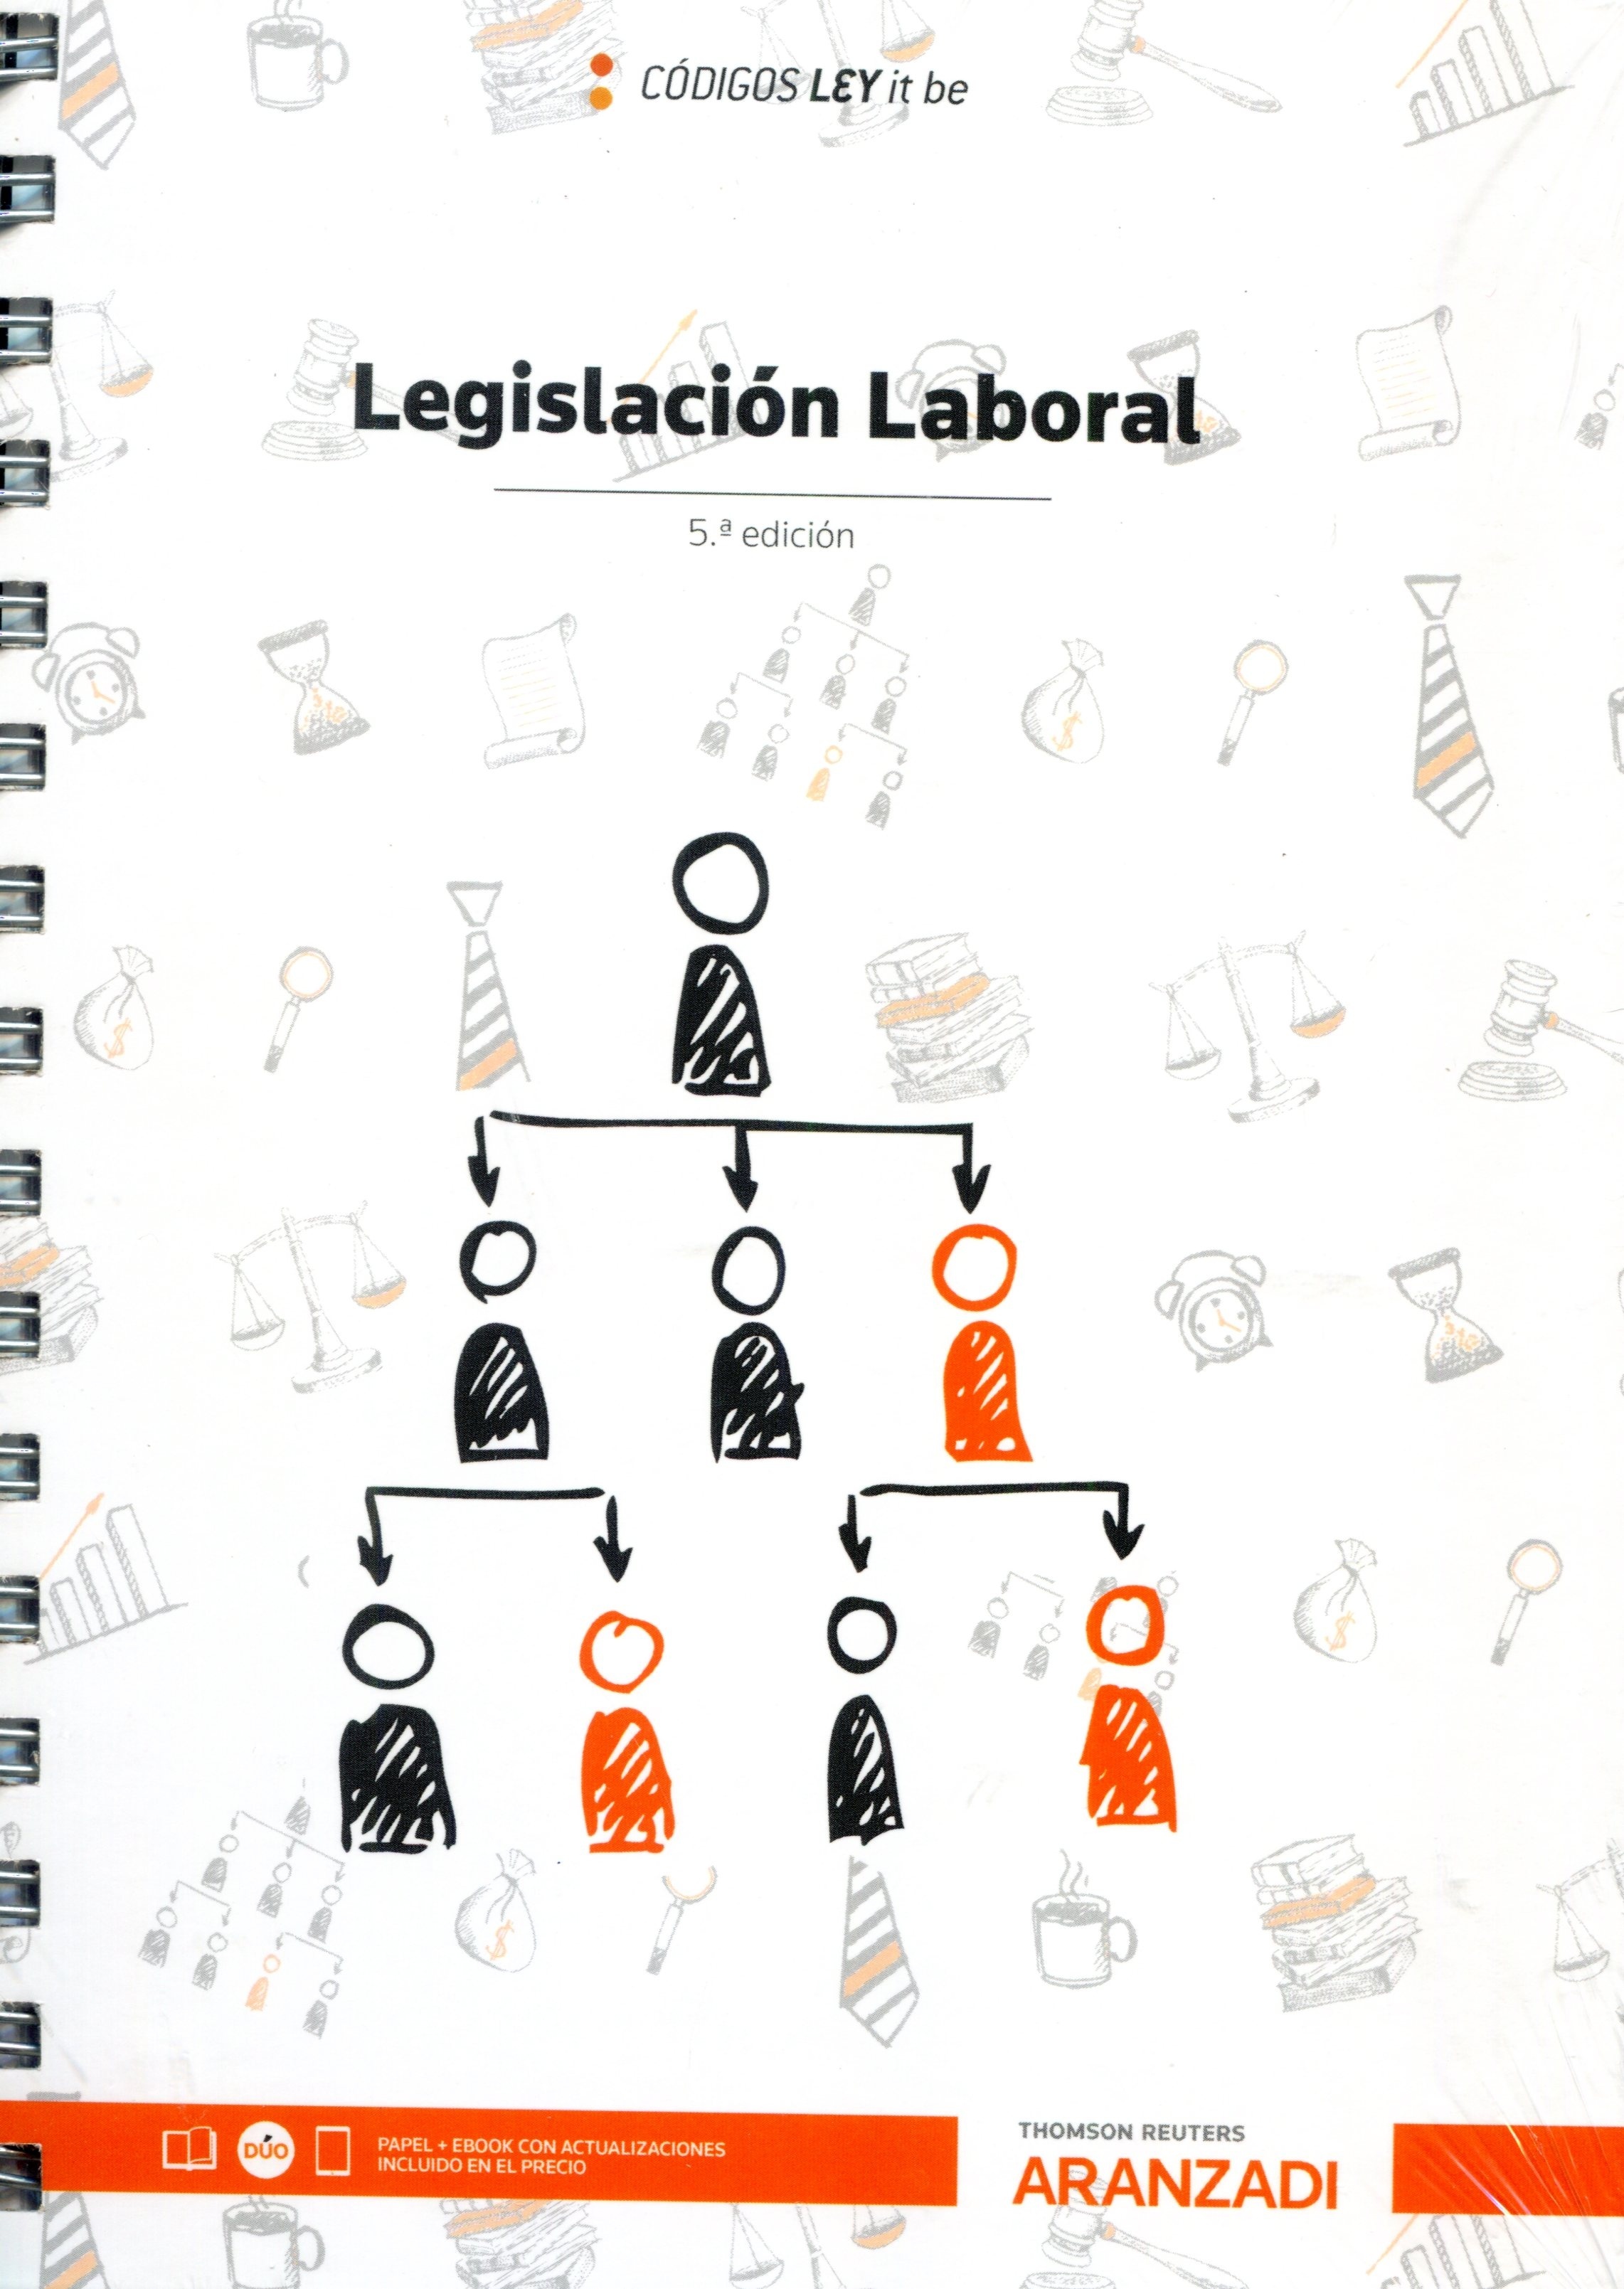 Legislación laboral (Ley it be)